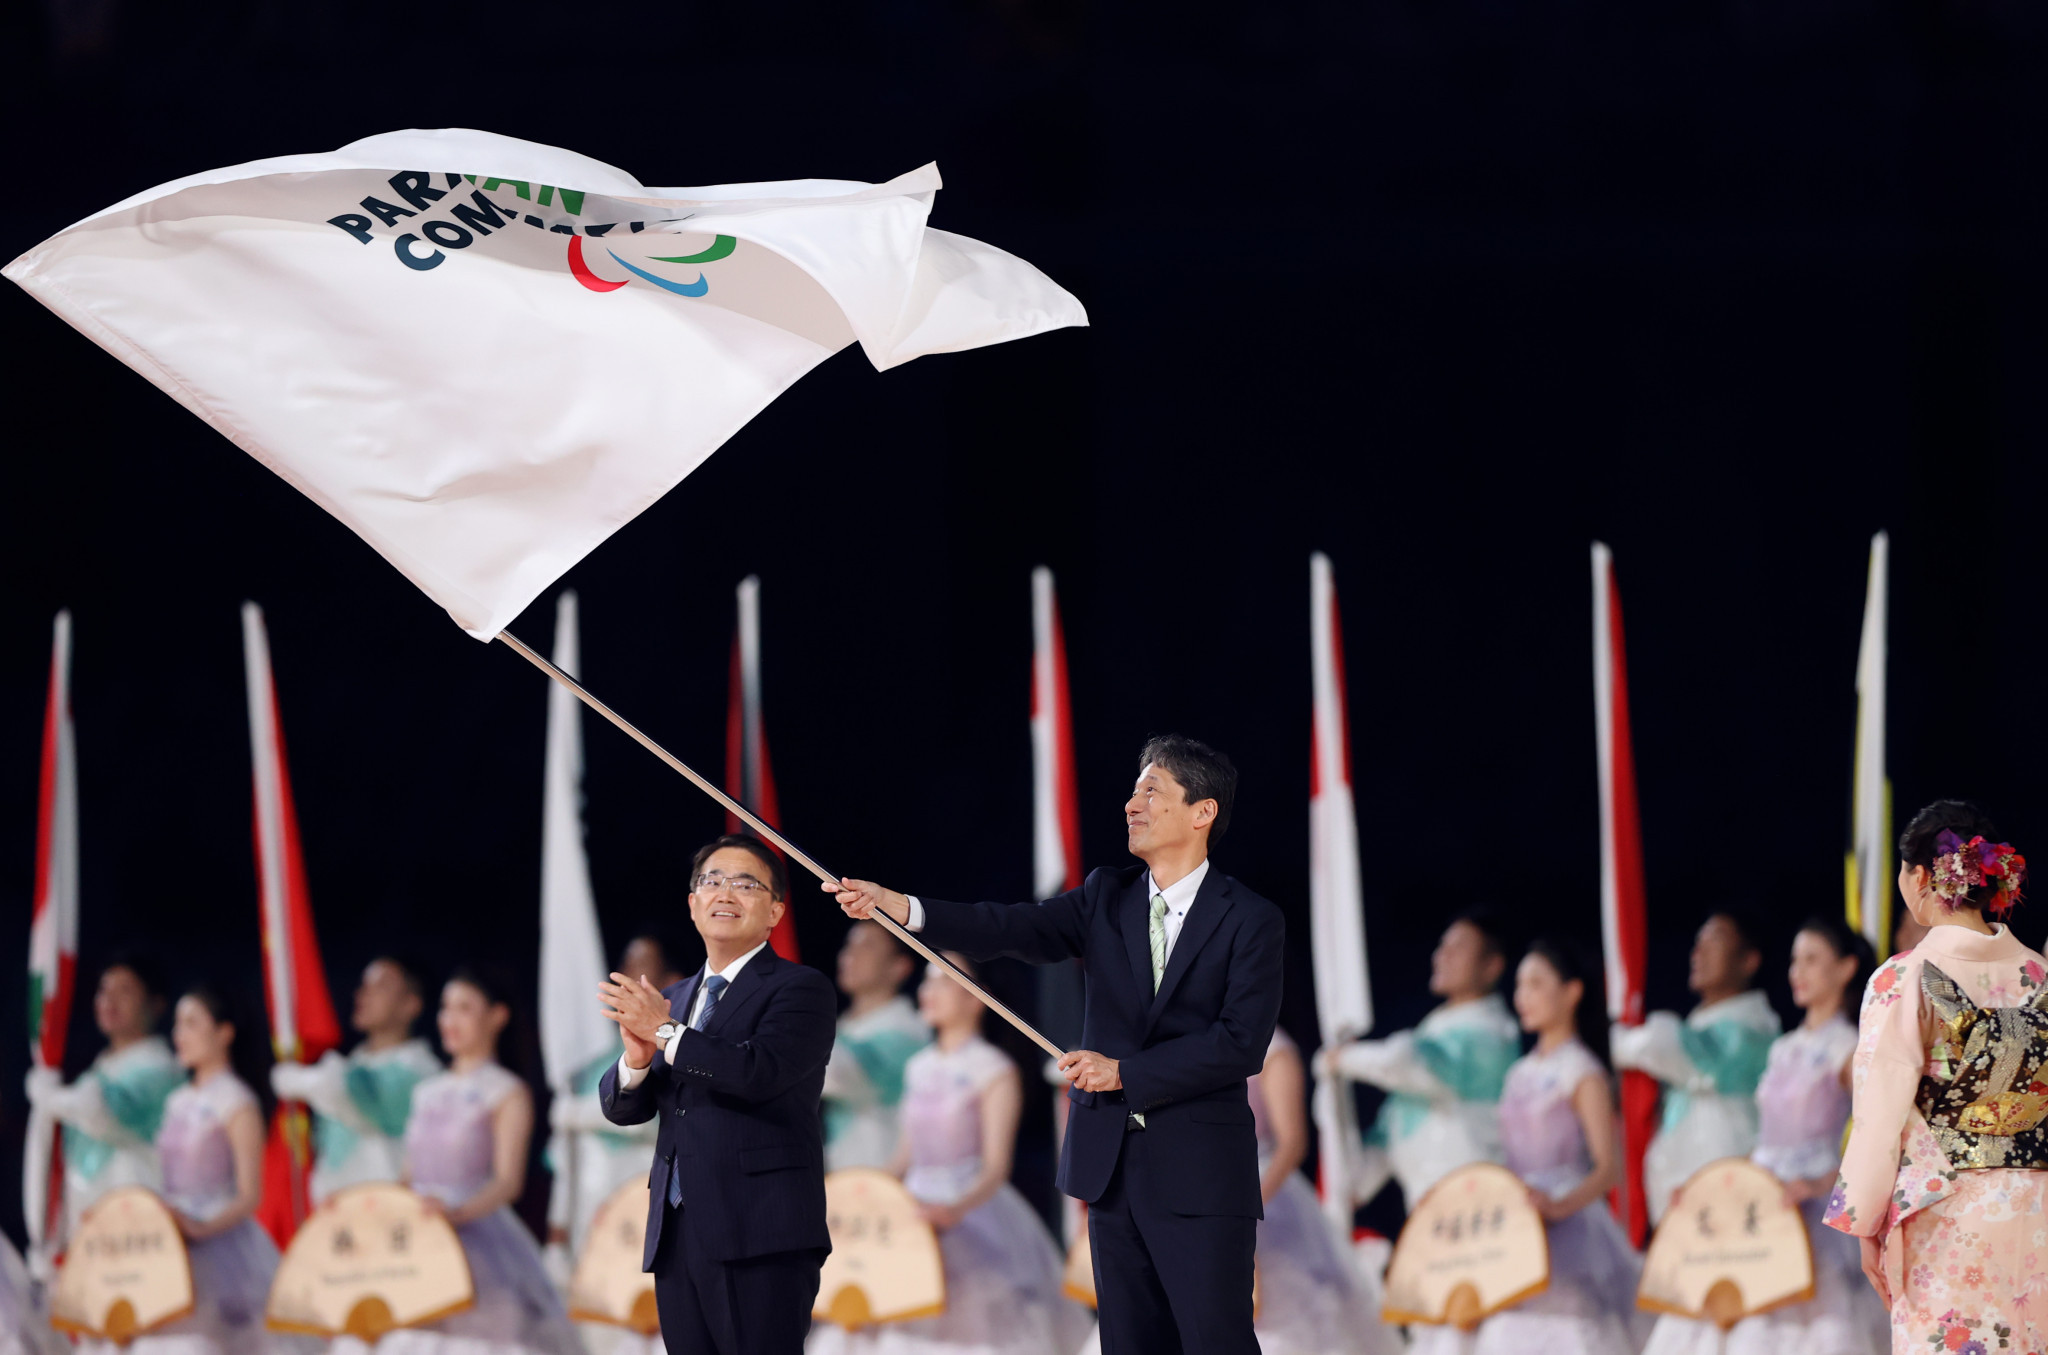 The closing ceremony of the Hangzhou 2022 Asian Para Games. APC